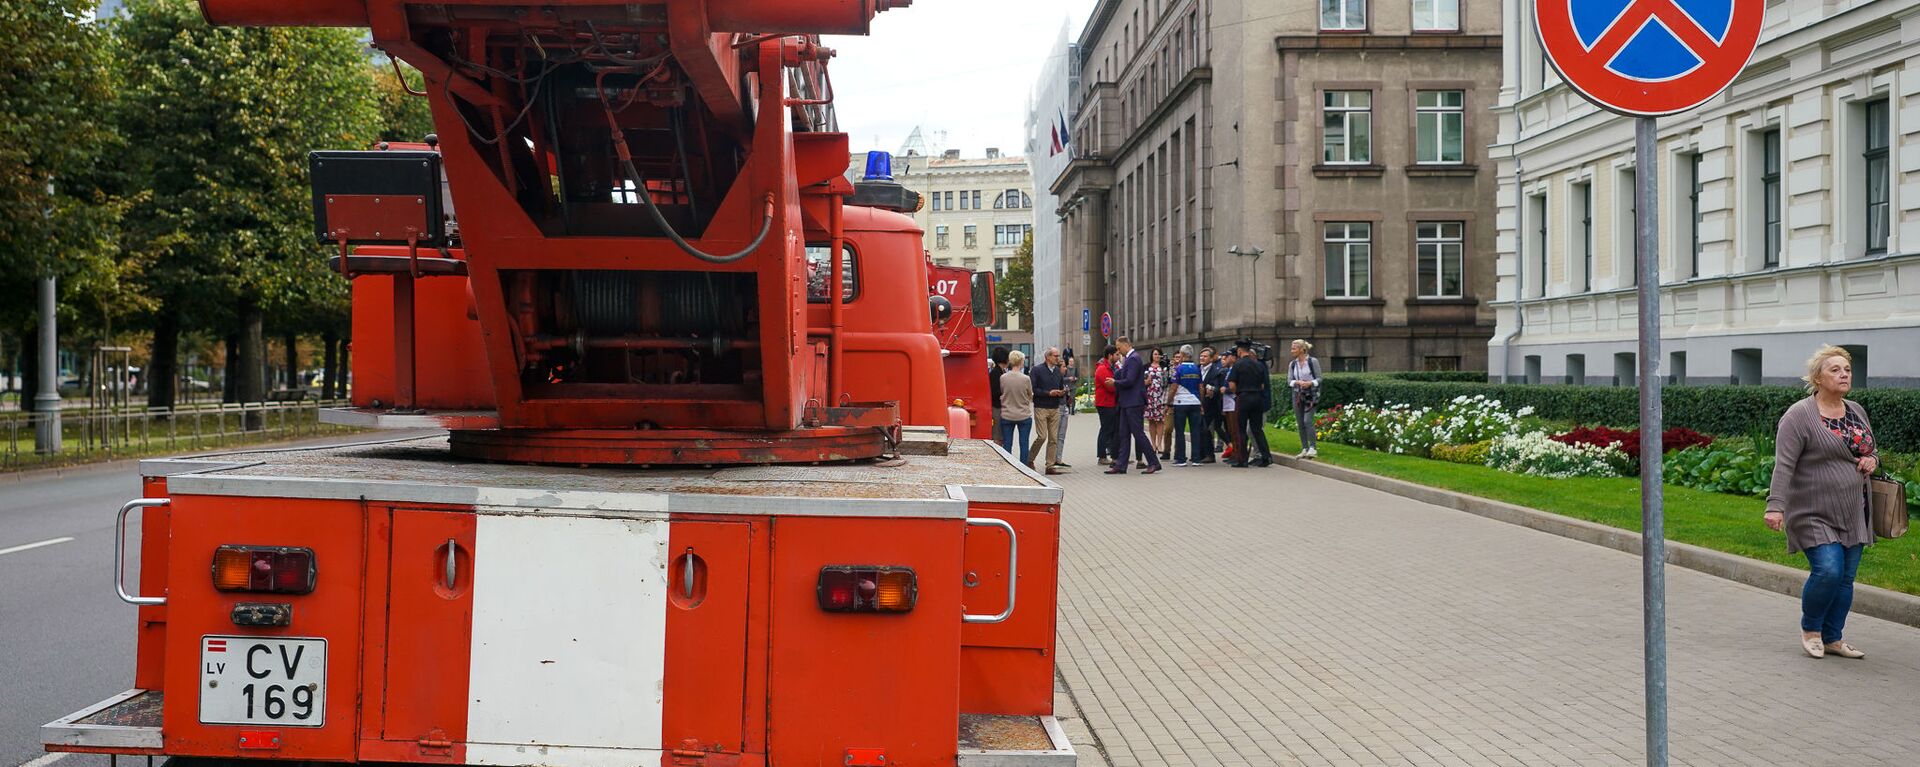 Латвийские пожарно-спасательные службы проводят акцию, чтобы привлечь внимание к проблемам финансирования - Sputnik Латвия, 1920, 19.09.2019